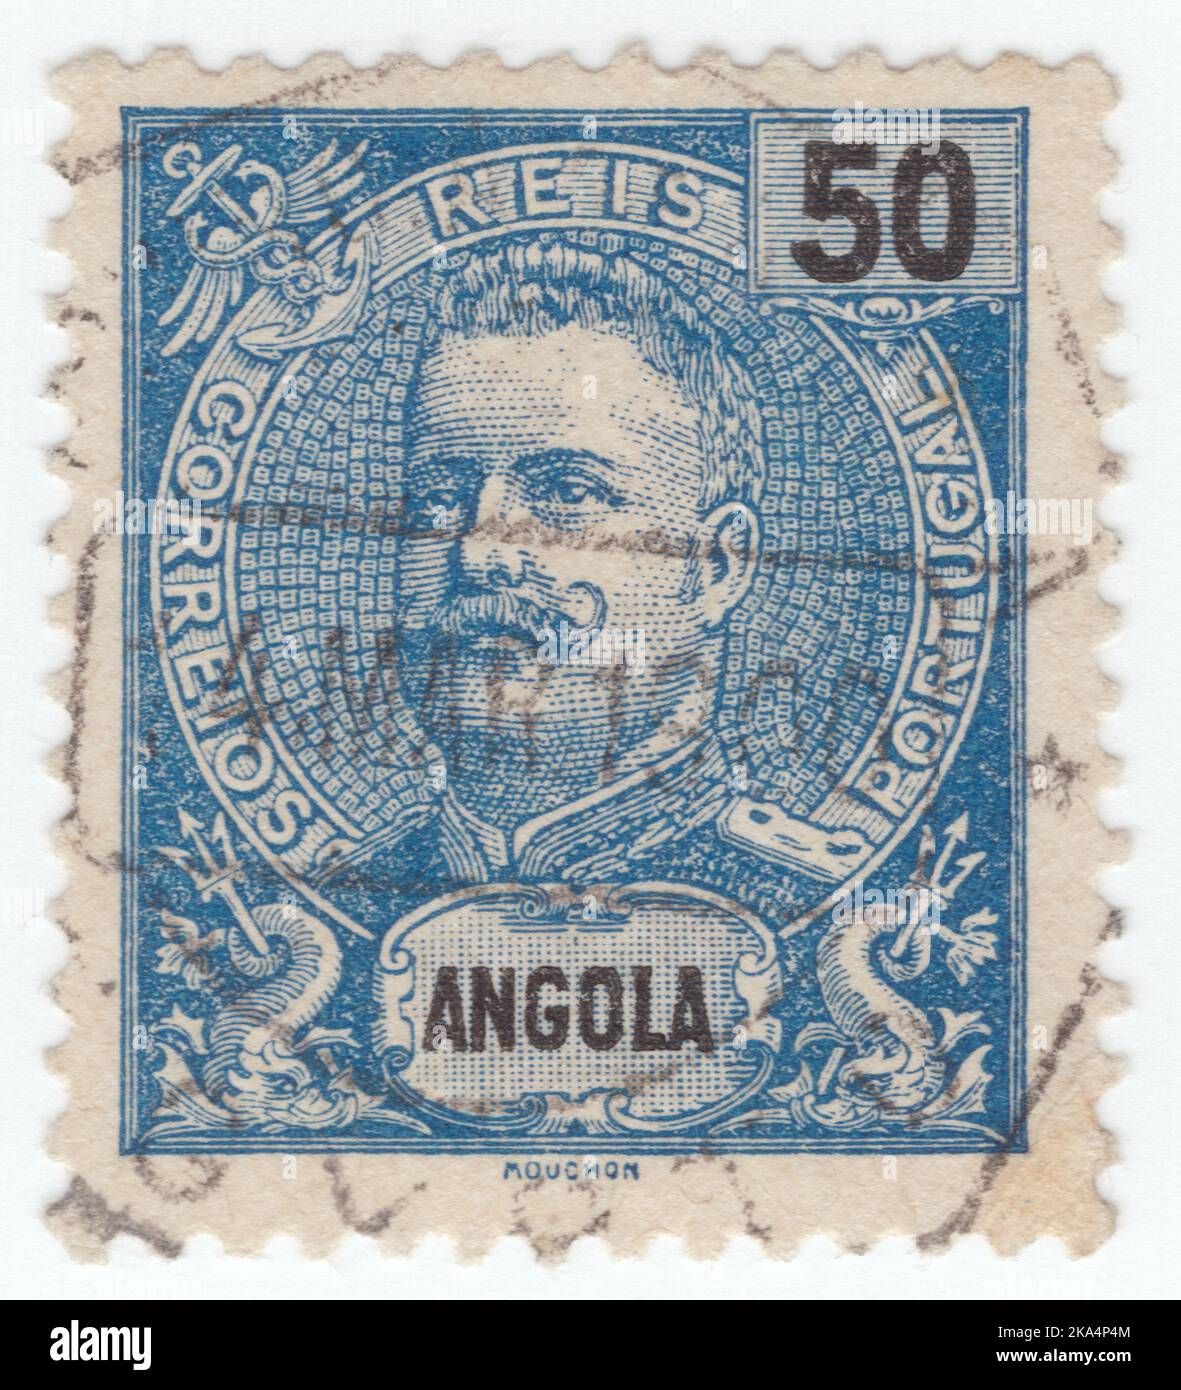 ANGOLA - VERS 1898: Un timbre-poste bleu reis de 50 montrant le portrait de Dom Carlos I, connu sous le nom de Diplomat, le Martyr, et l'océanographe, entre autres noms, a été le roi du Portugal de 1889 jusqu'à son assassinat en 1908 Banque D'Images